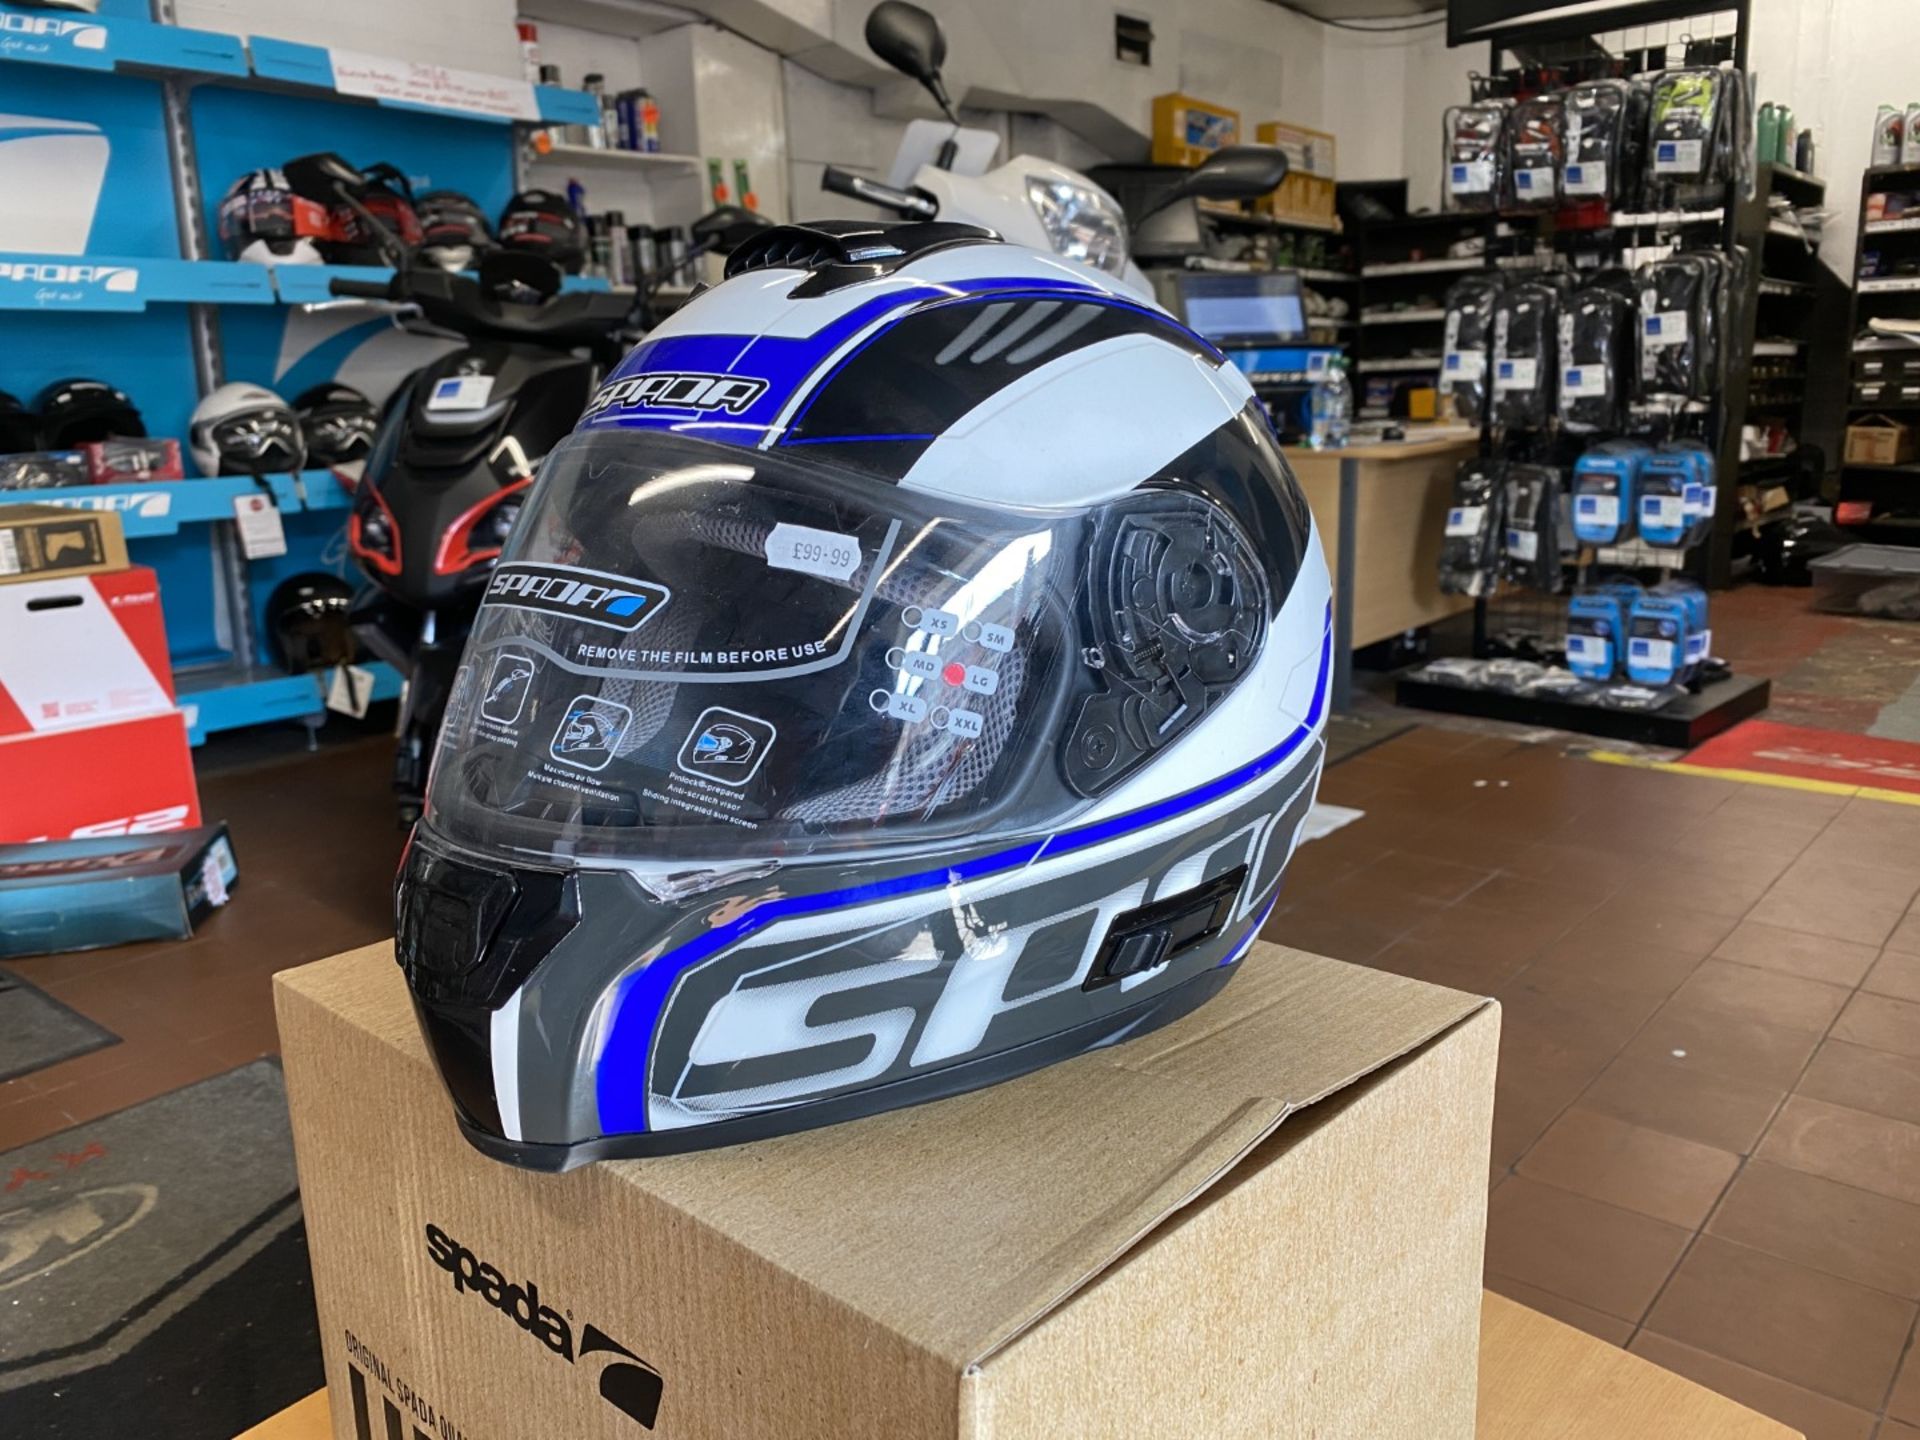 Spada Helmet Matt White/Blue/Black Large - Motorcycle / Motorbike Helmet - RRP £99.00 - Image 2 of 4